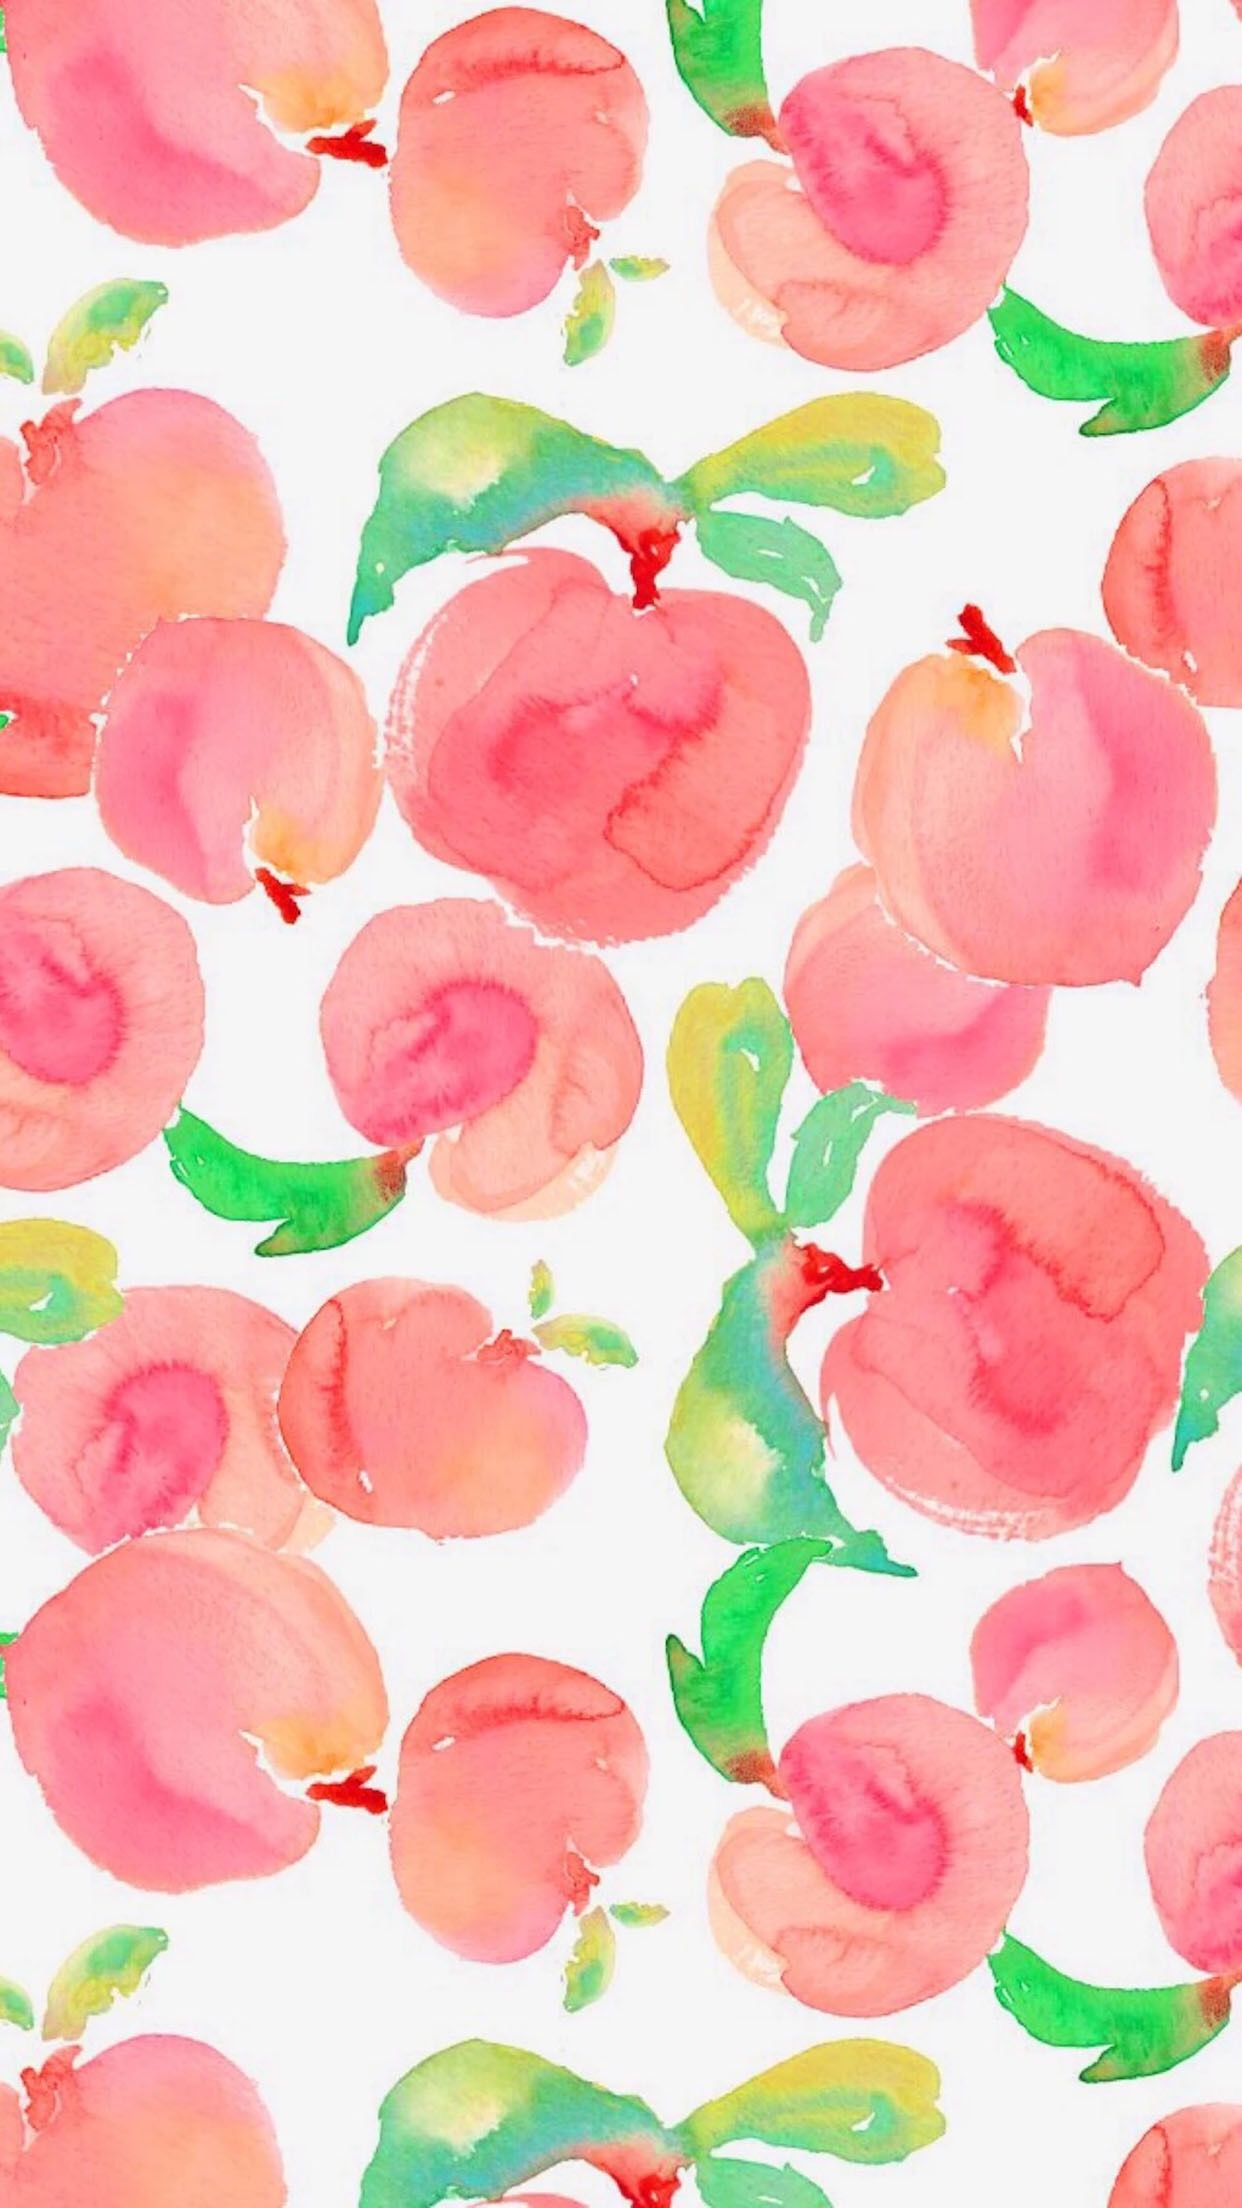 Peach wallpaper for mac